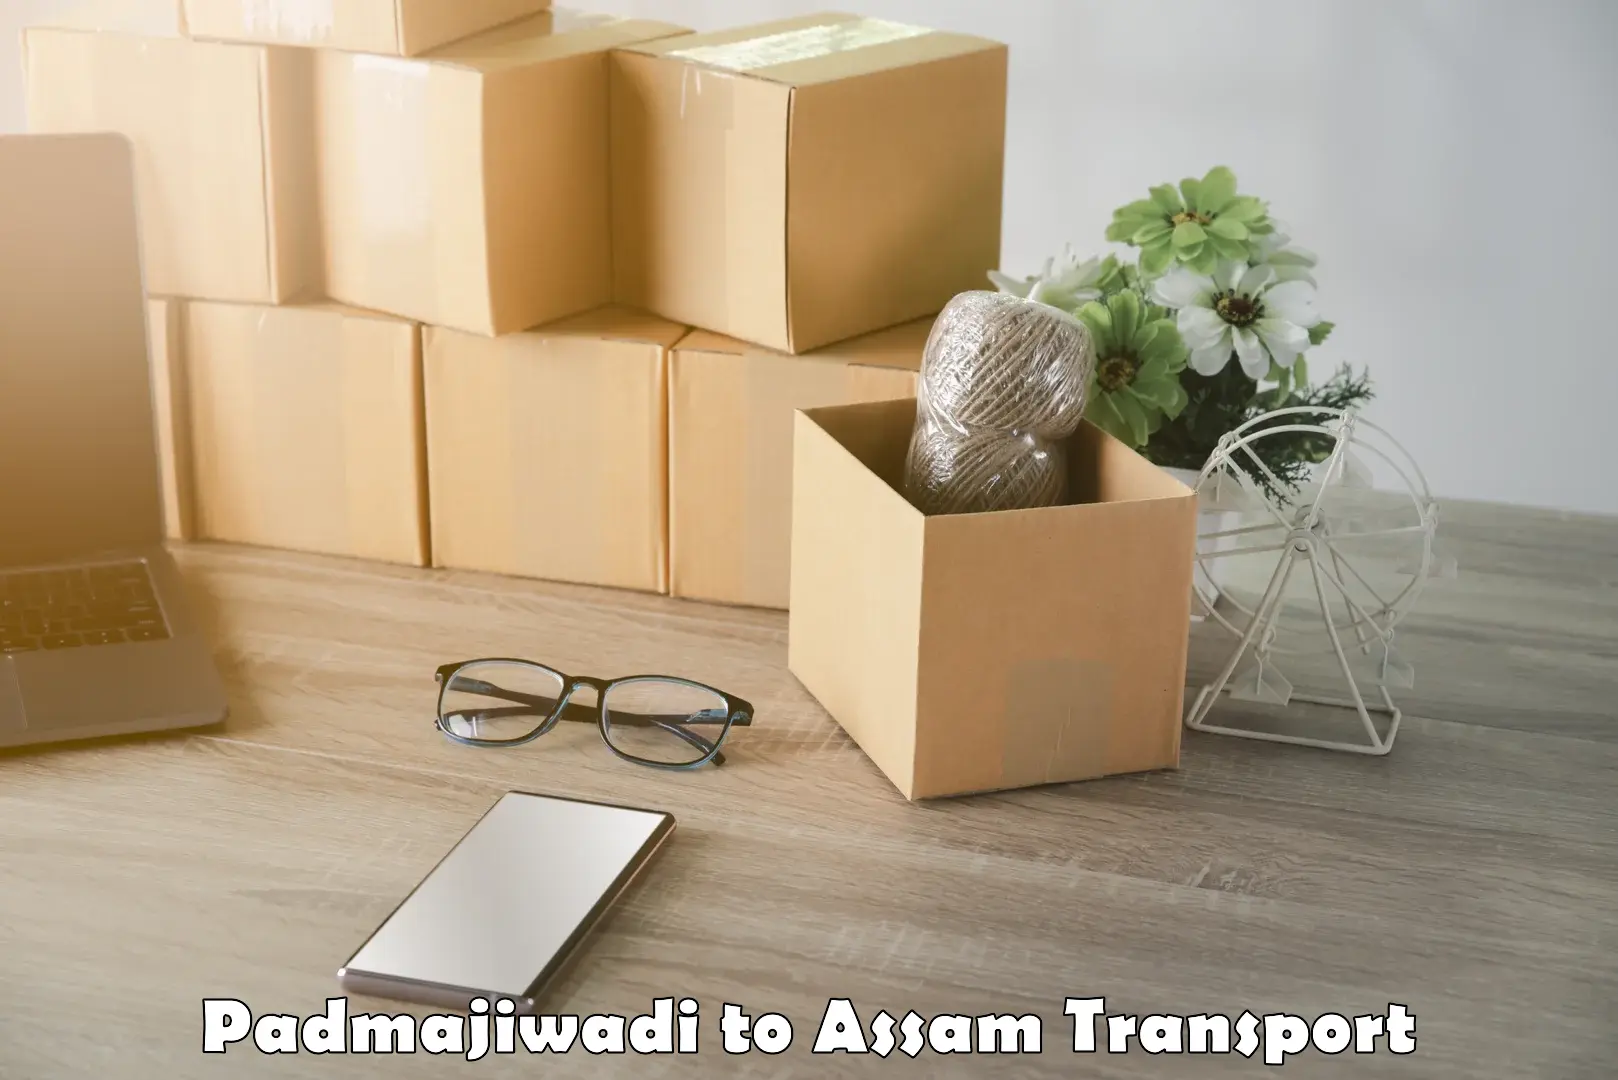 Furniture transport service Padmajiwadi to Kaliabor